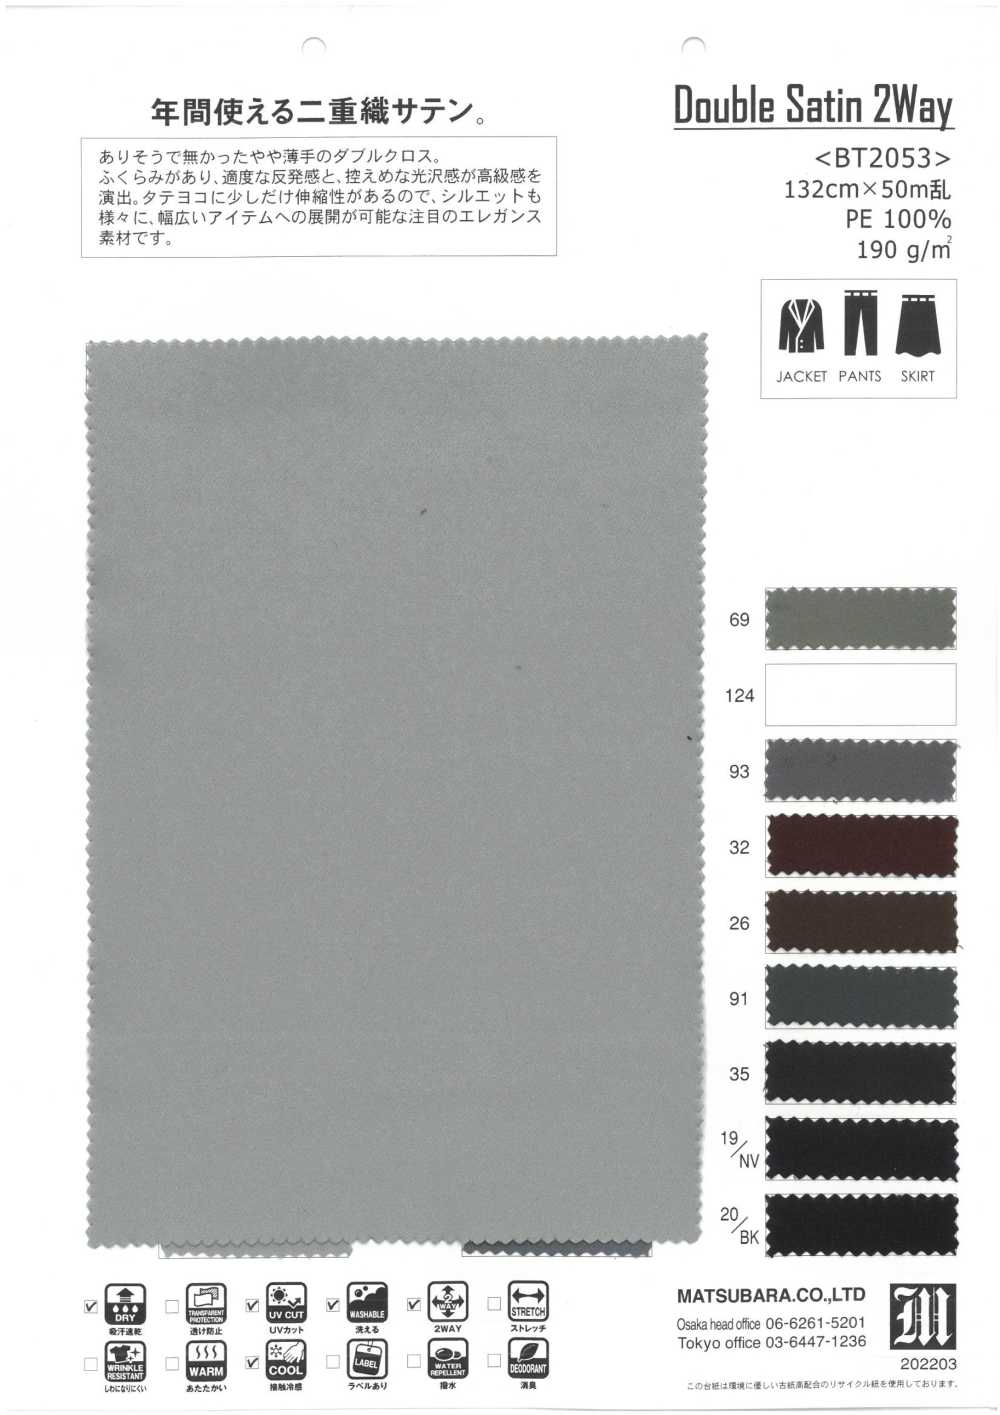 BT2053 Double Satin 2Way[Textile / Fabric] Matsubara